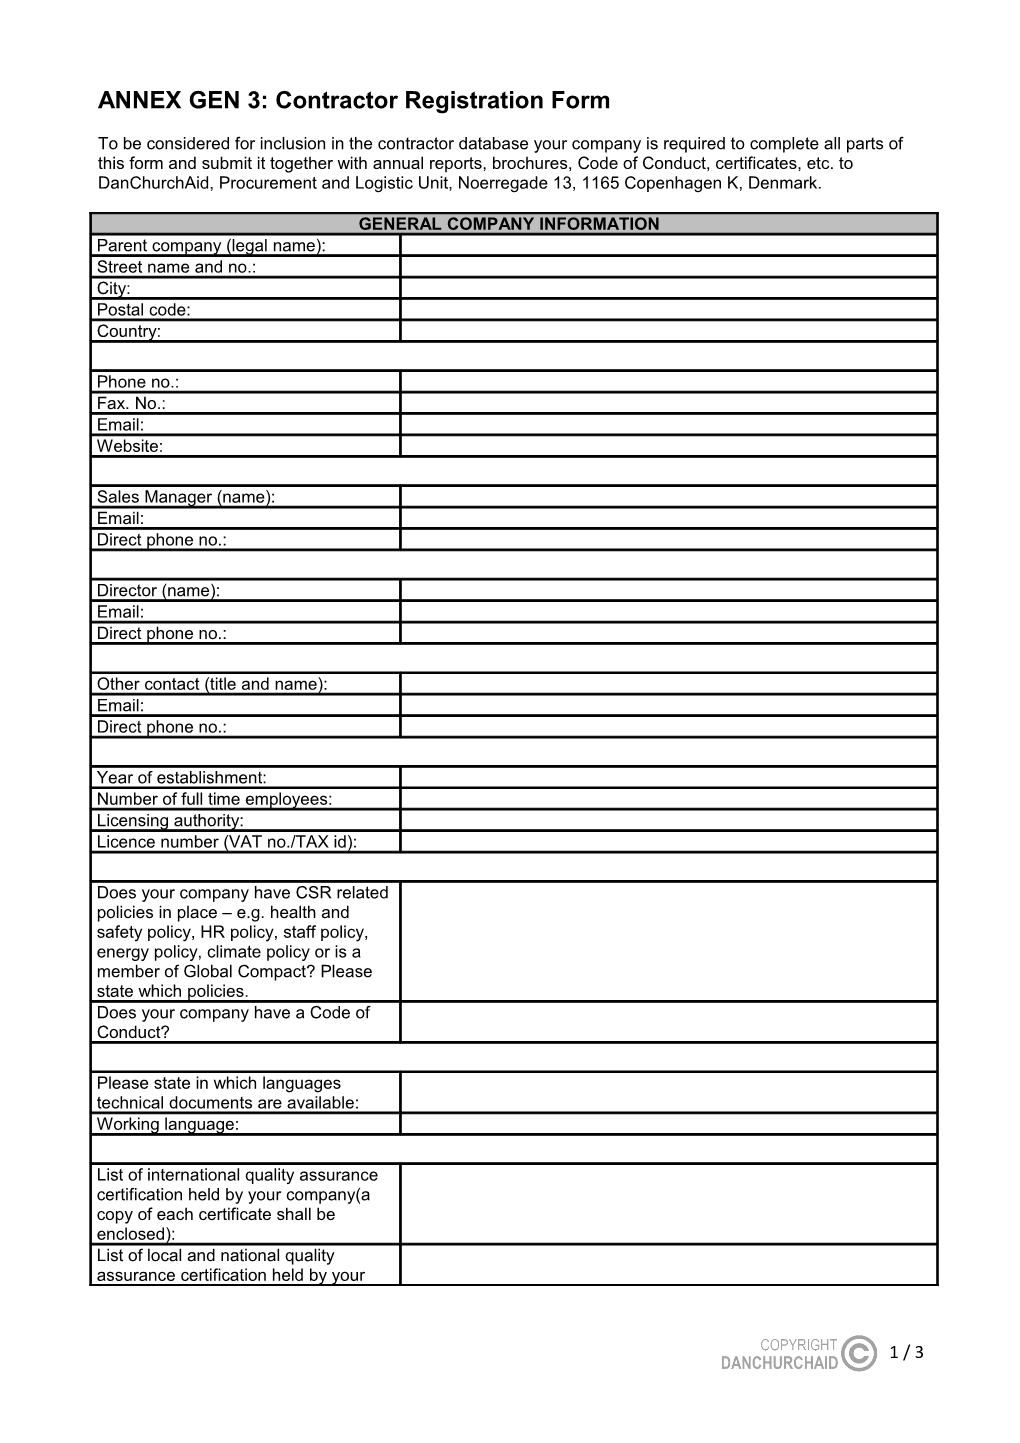 Annex 7: Supplier Registration Form